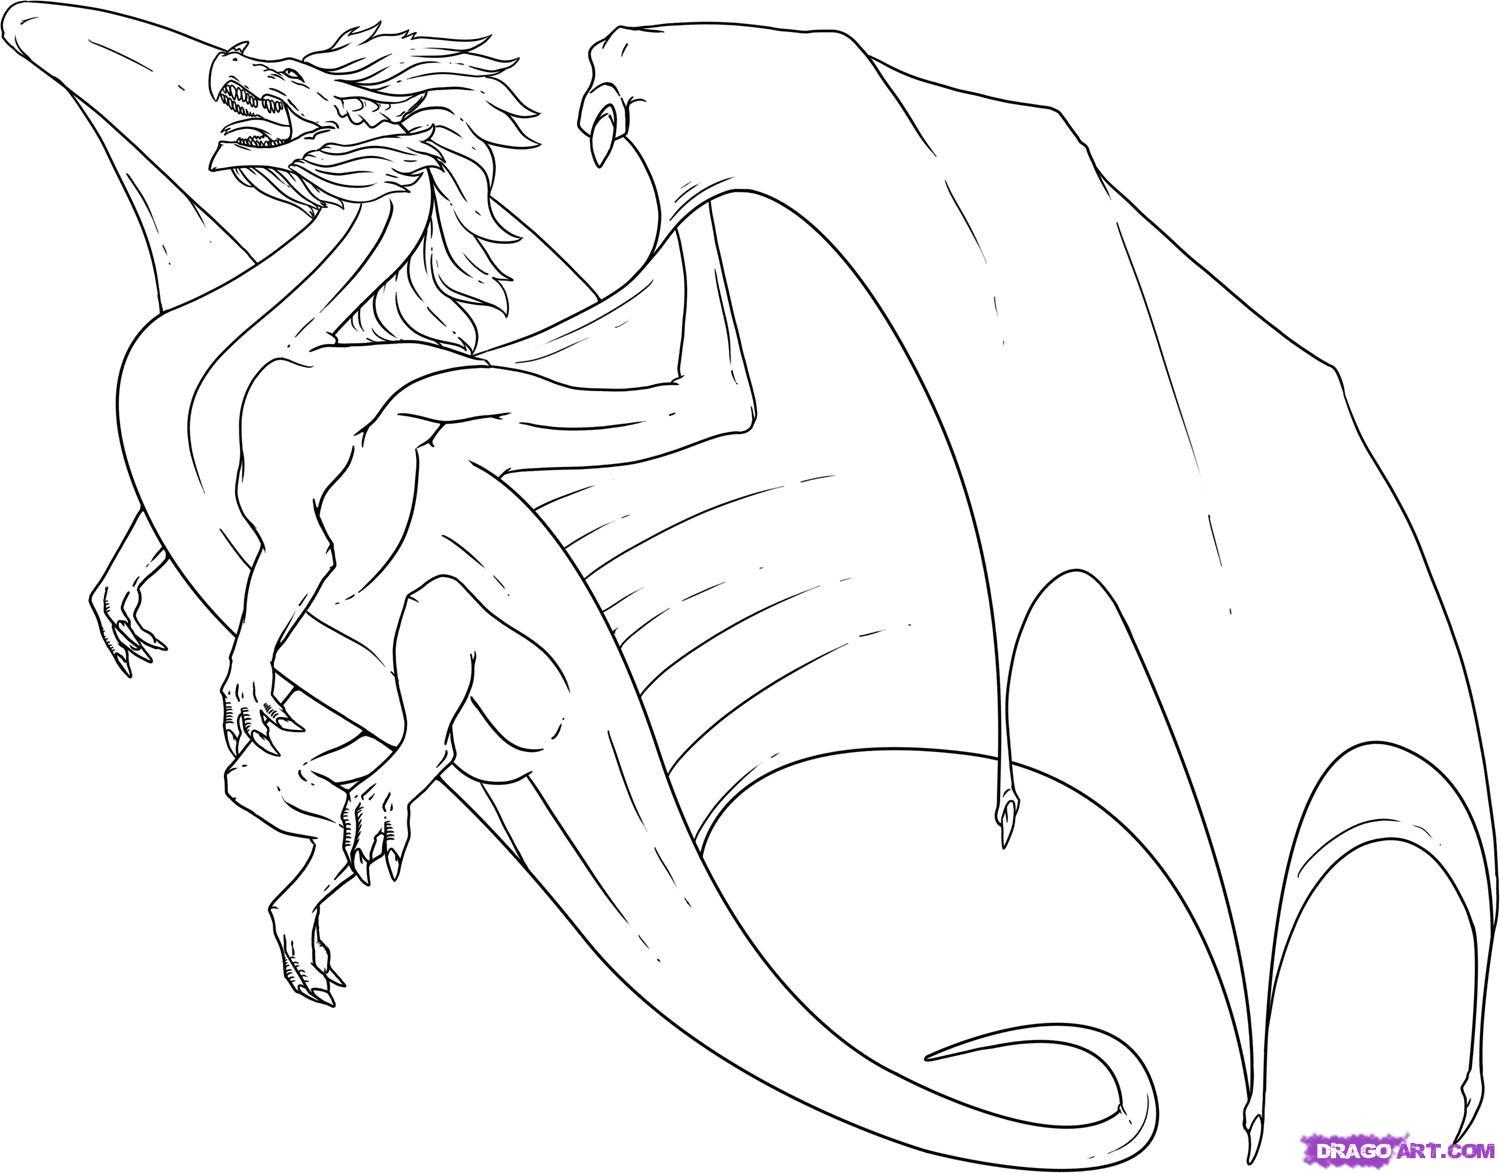 Easy Flying Dragon Drawings - Gallery